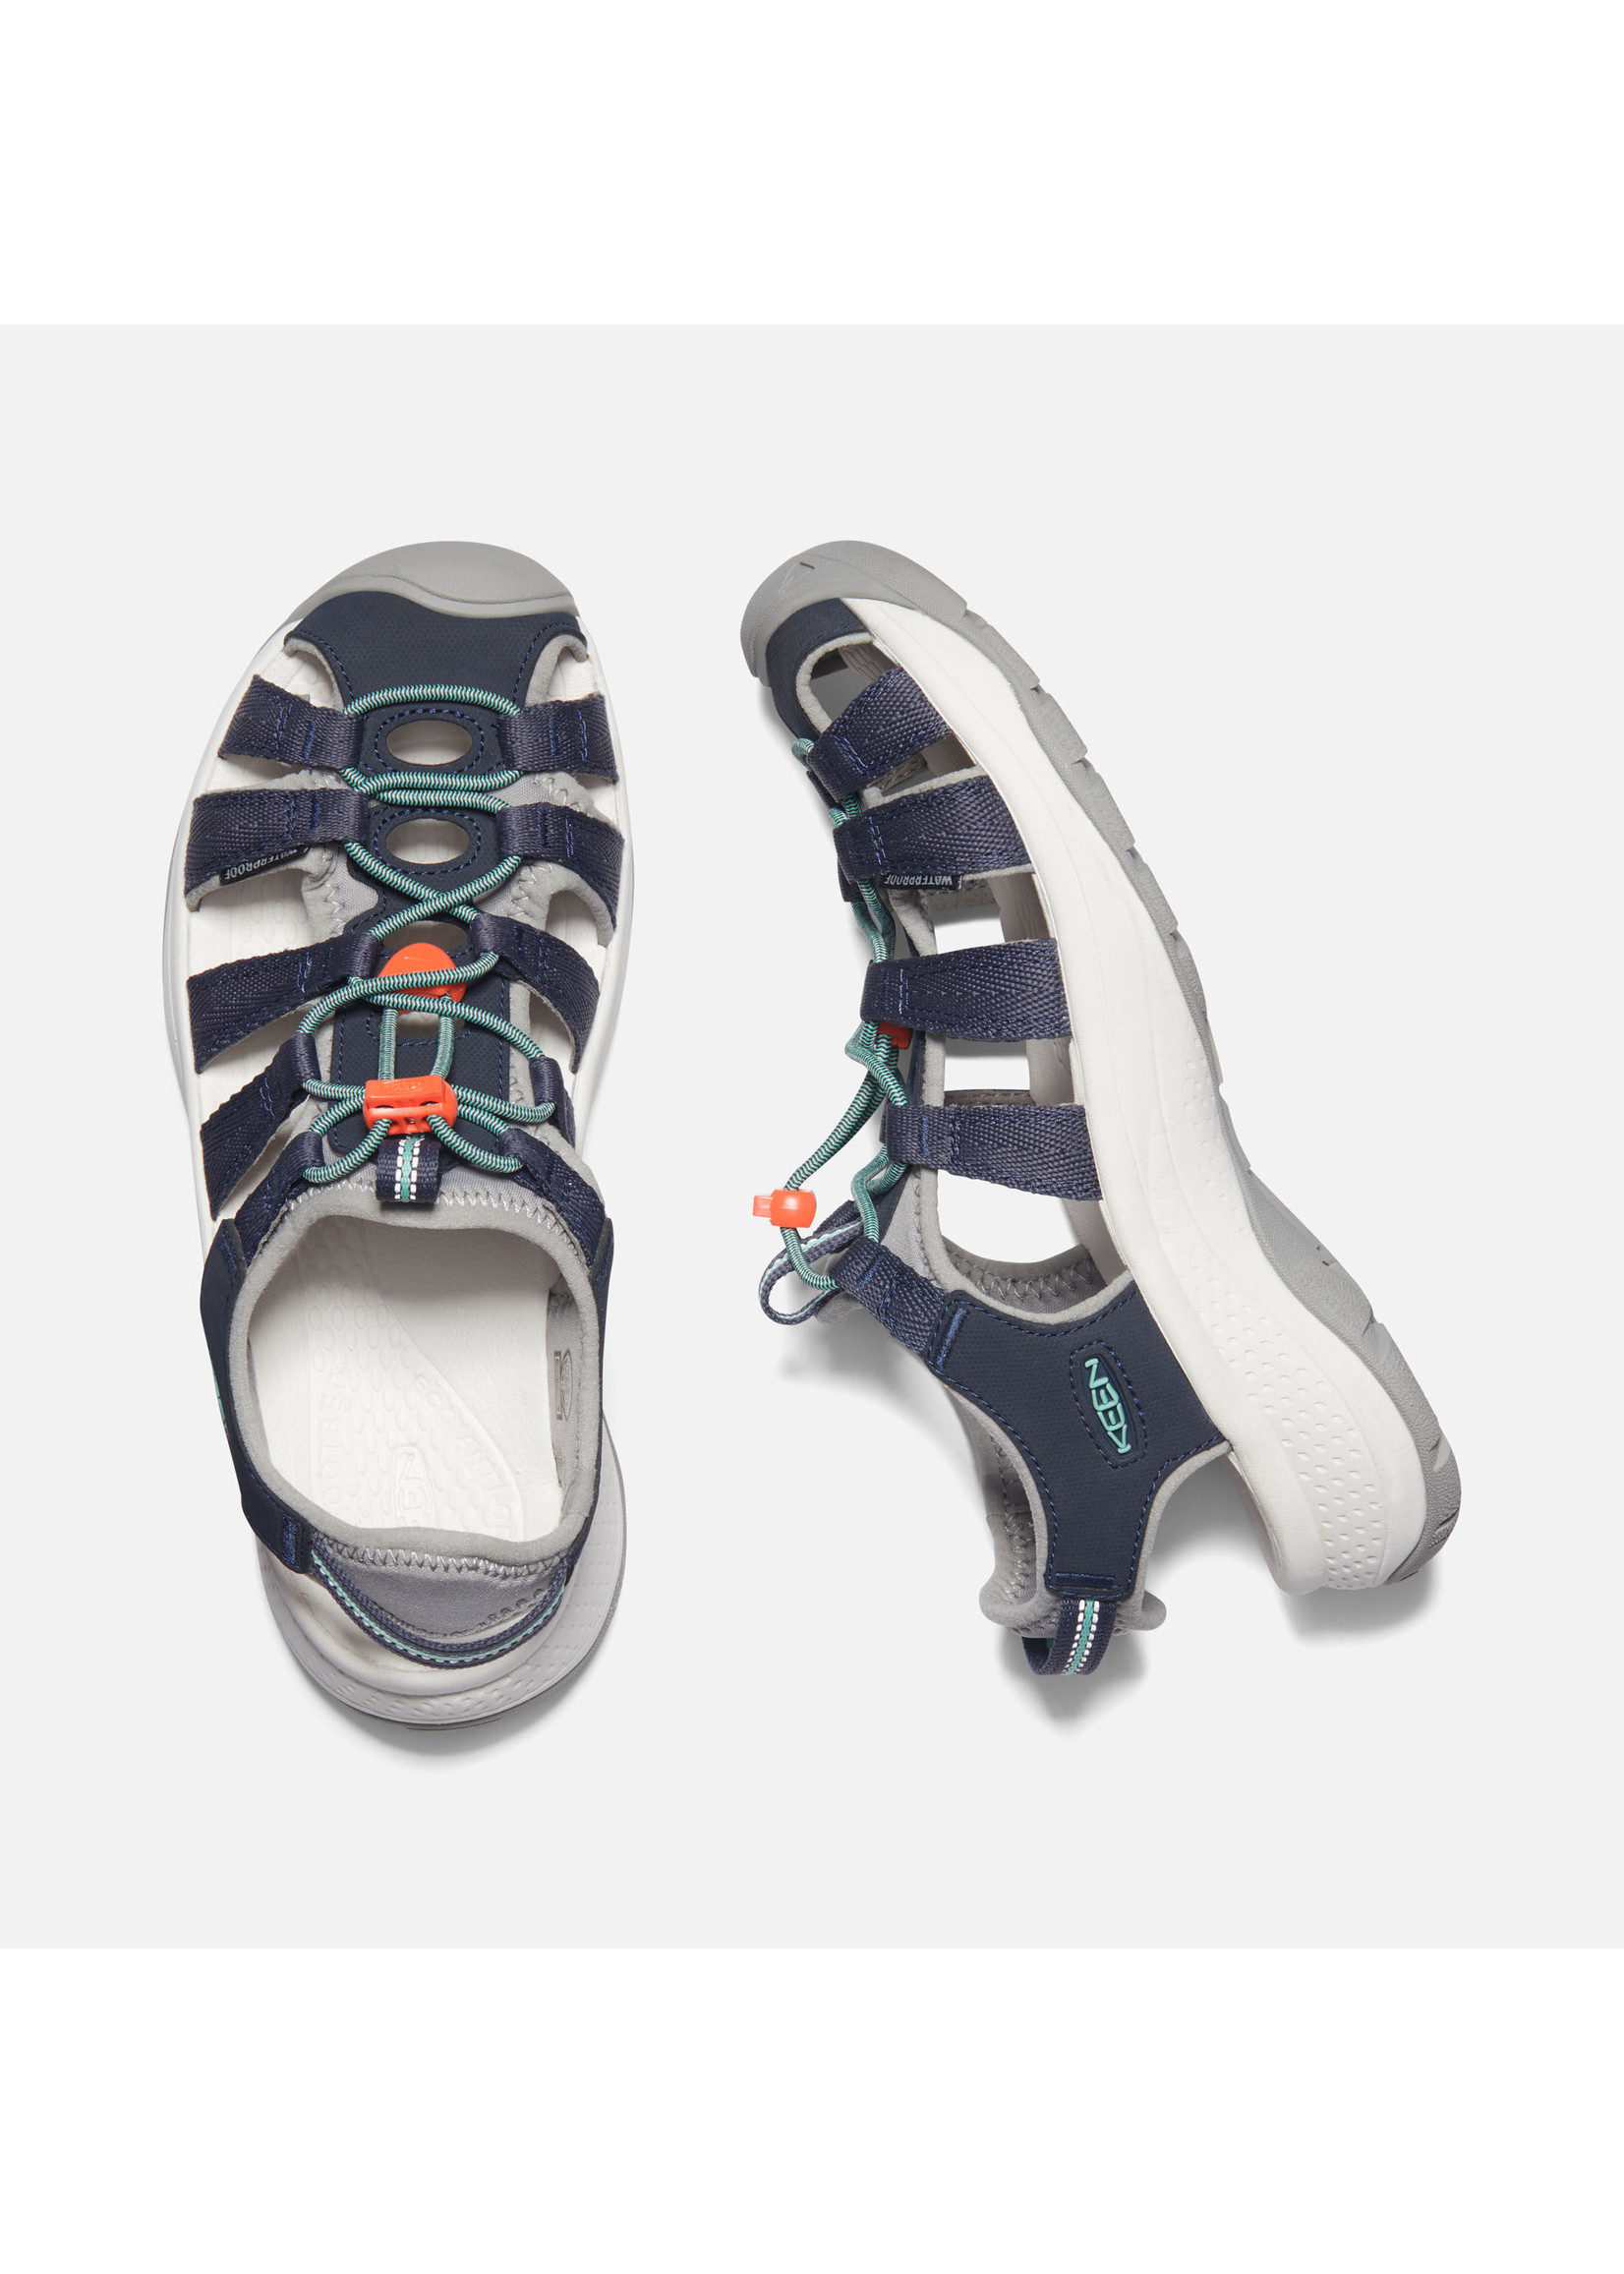 Keen Footwear Womens Astoria West Sandal Navy/Beveled Glass